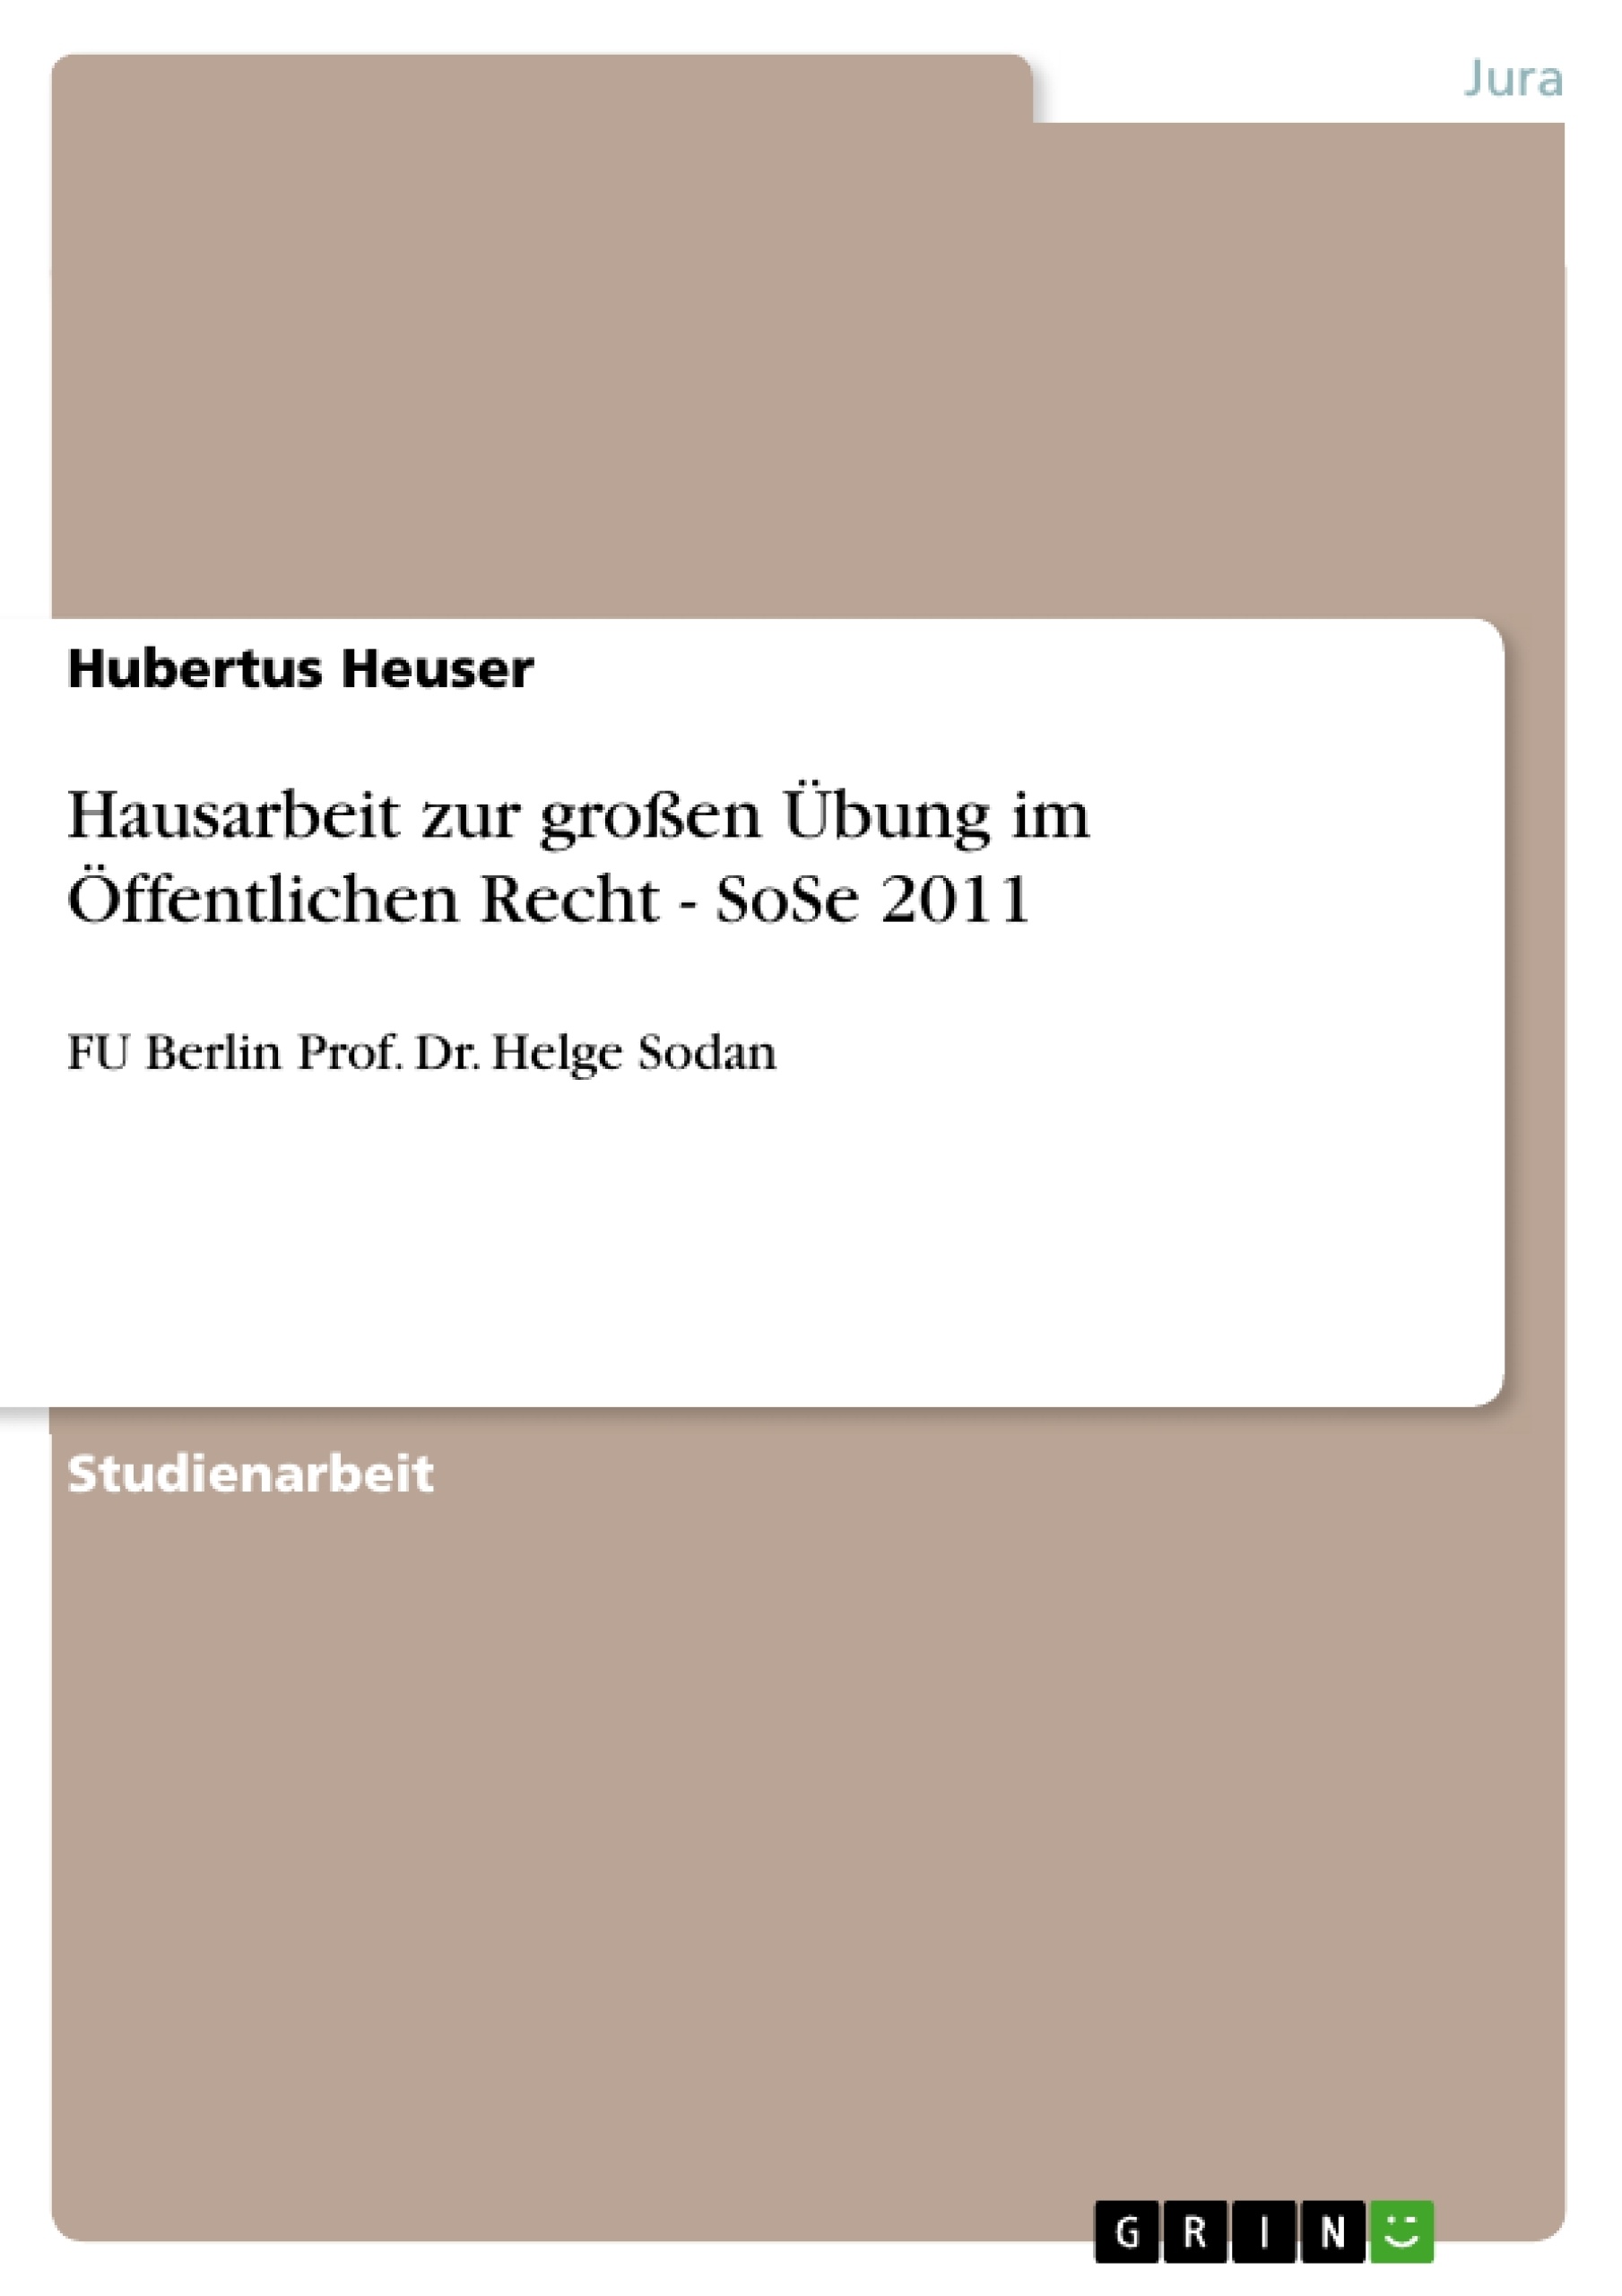 Title: Hausarbeit zur großen Übung im Öffentlichen Recht - SoSe 2011